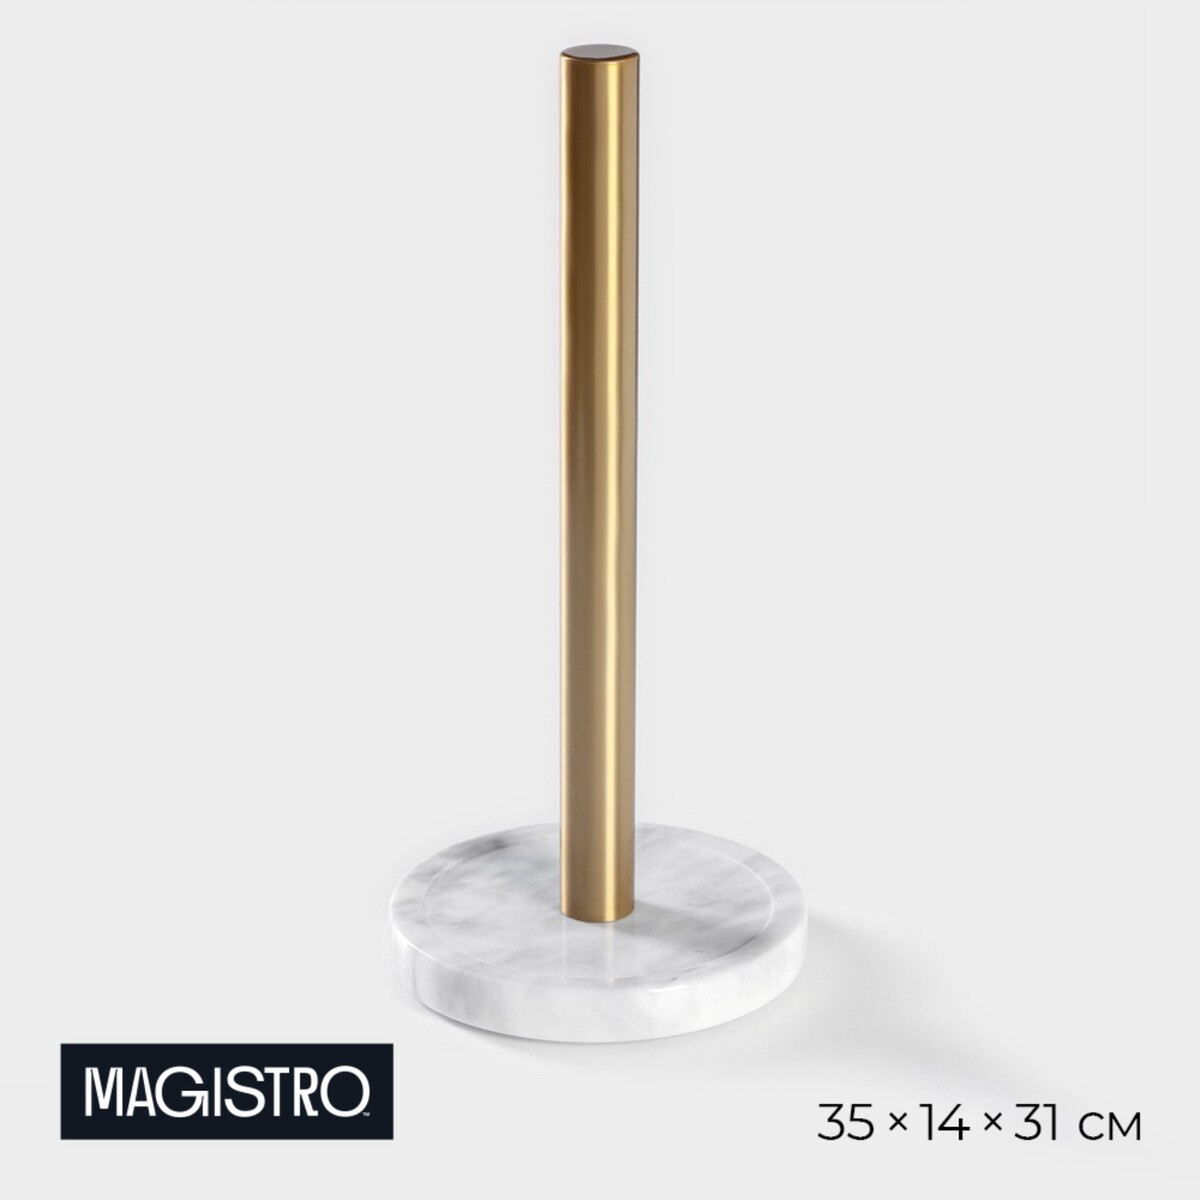 Держатель для бумажных полотенец magistro marble, 35×14×31 см, из мрамора Magistro